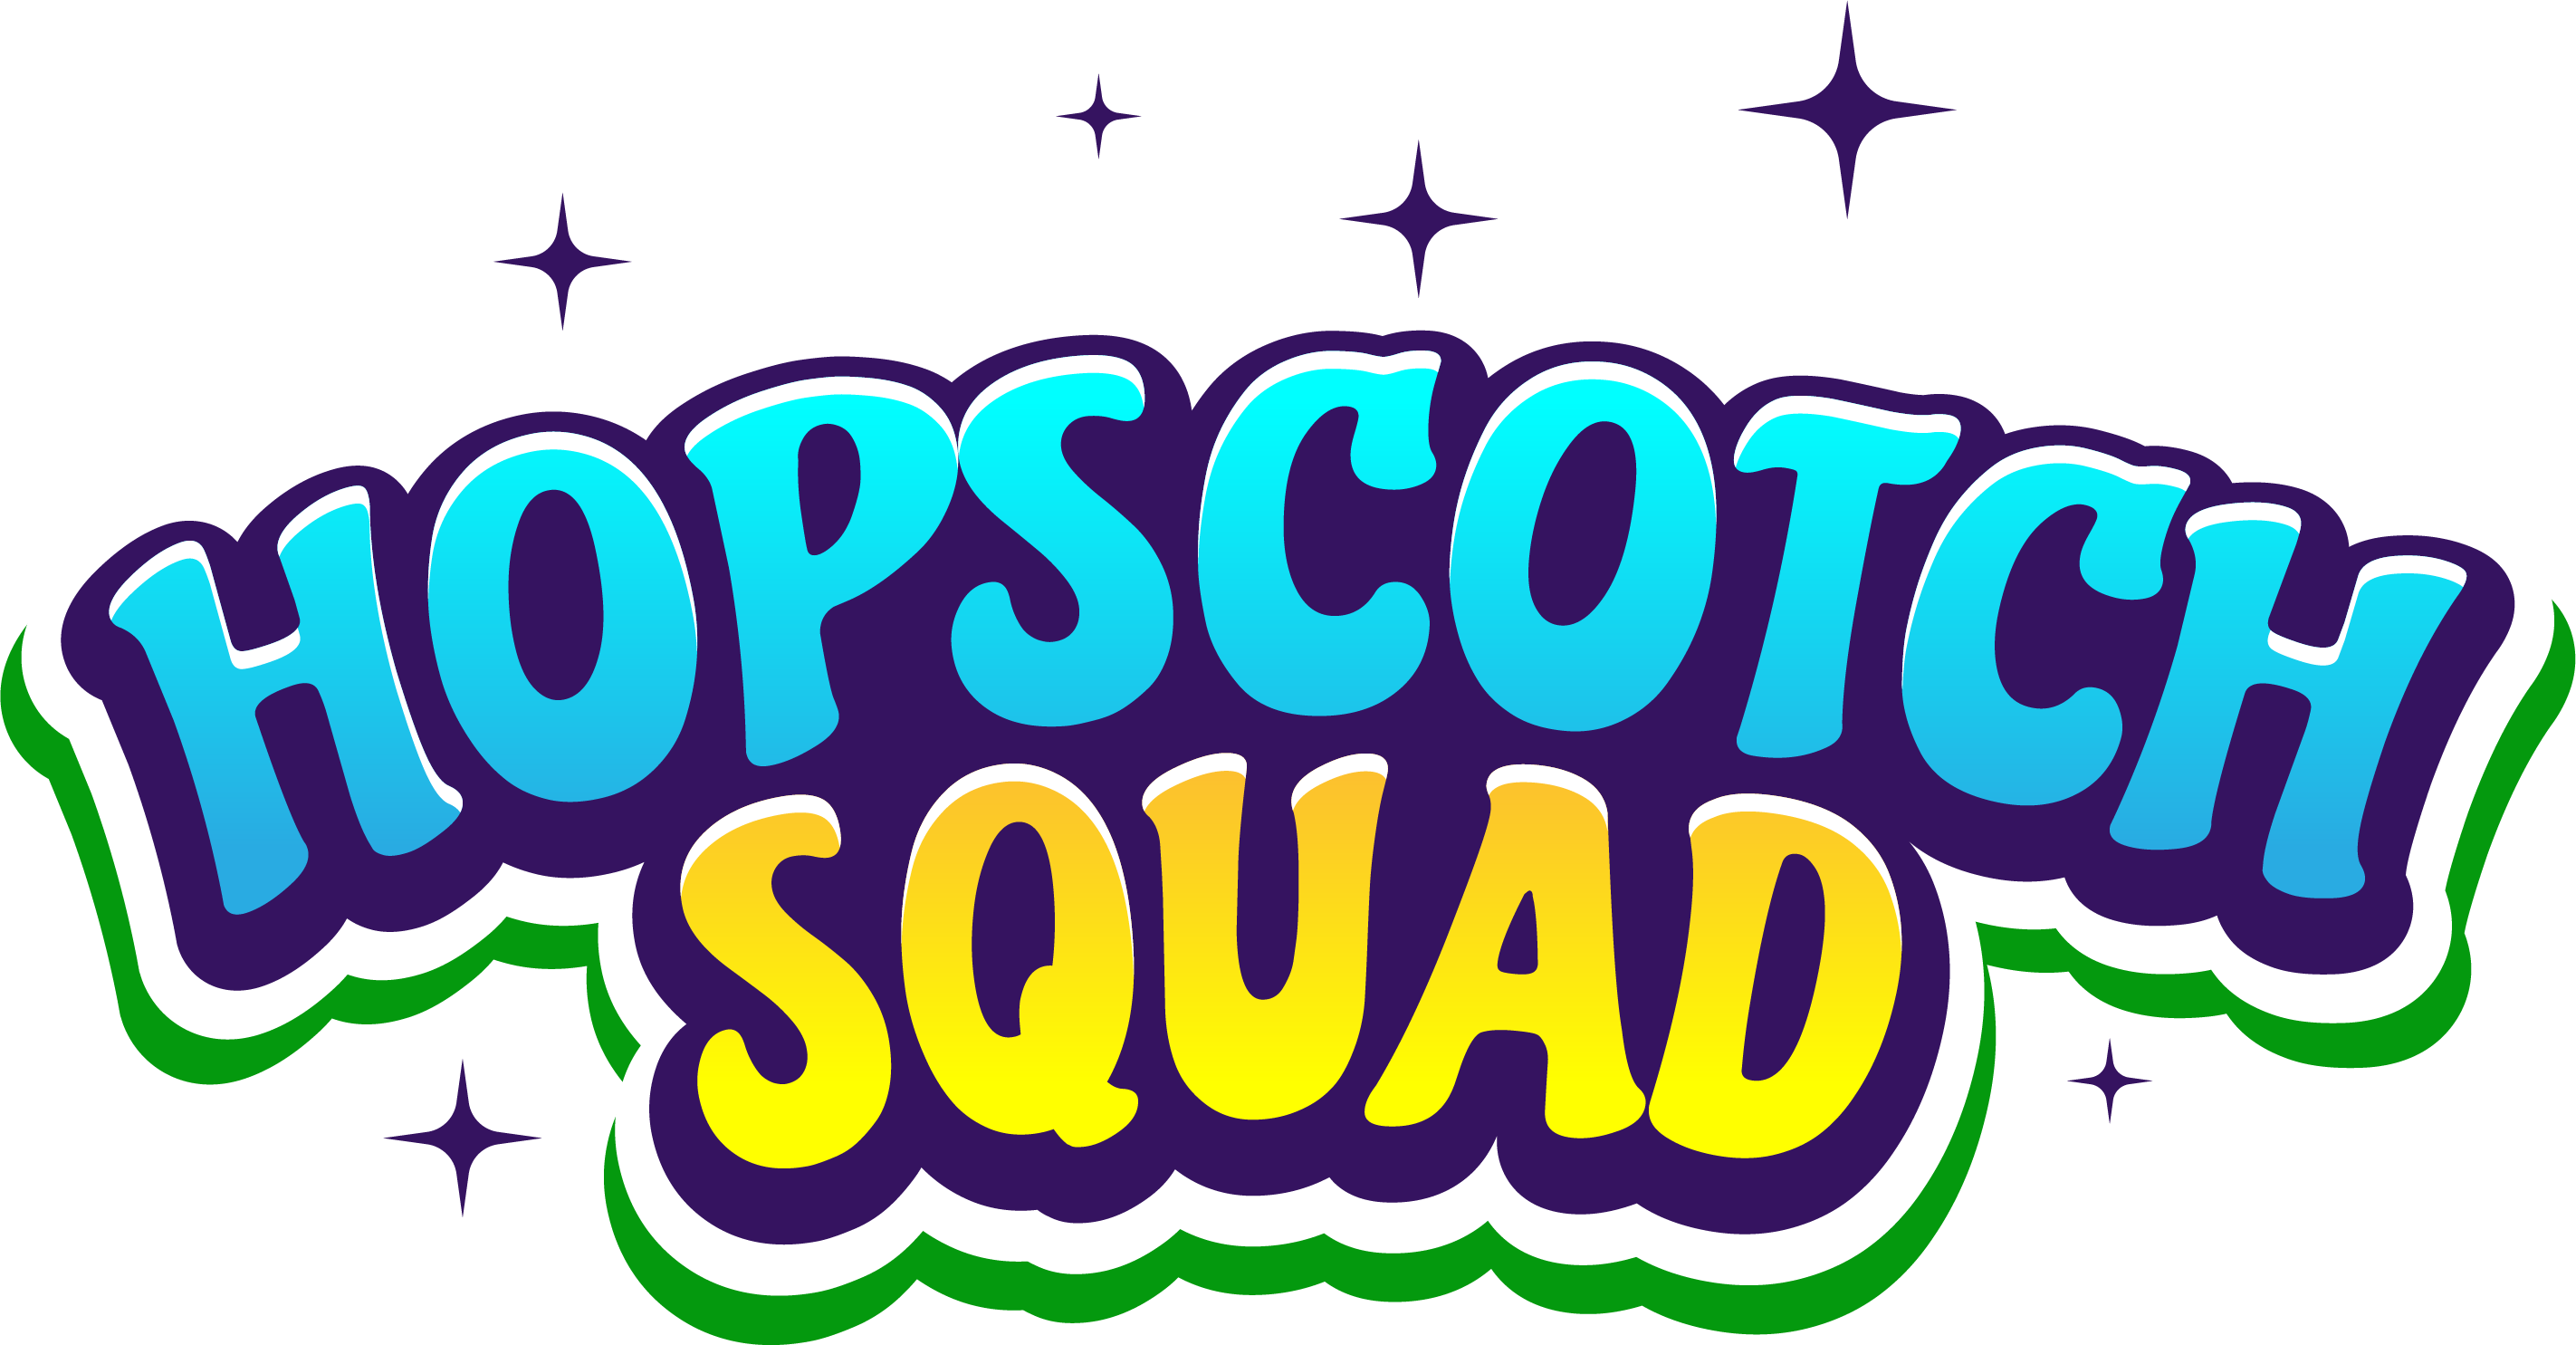 Hopscotch Squad